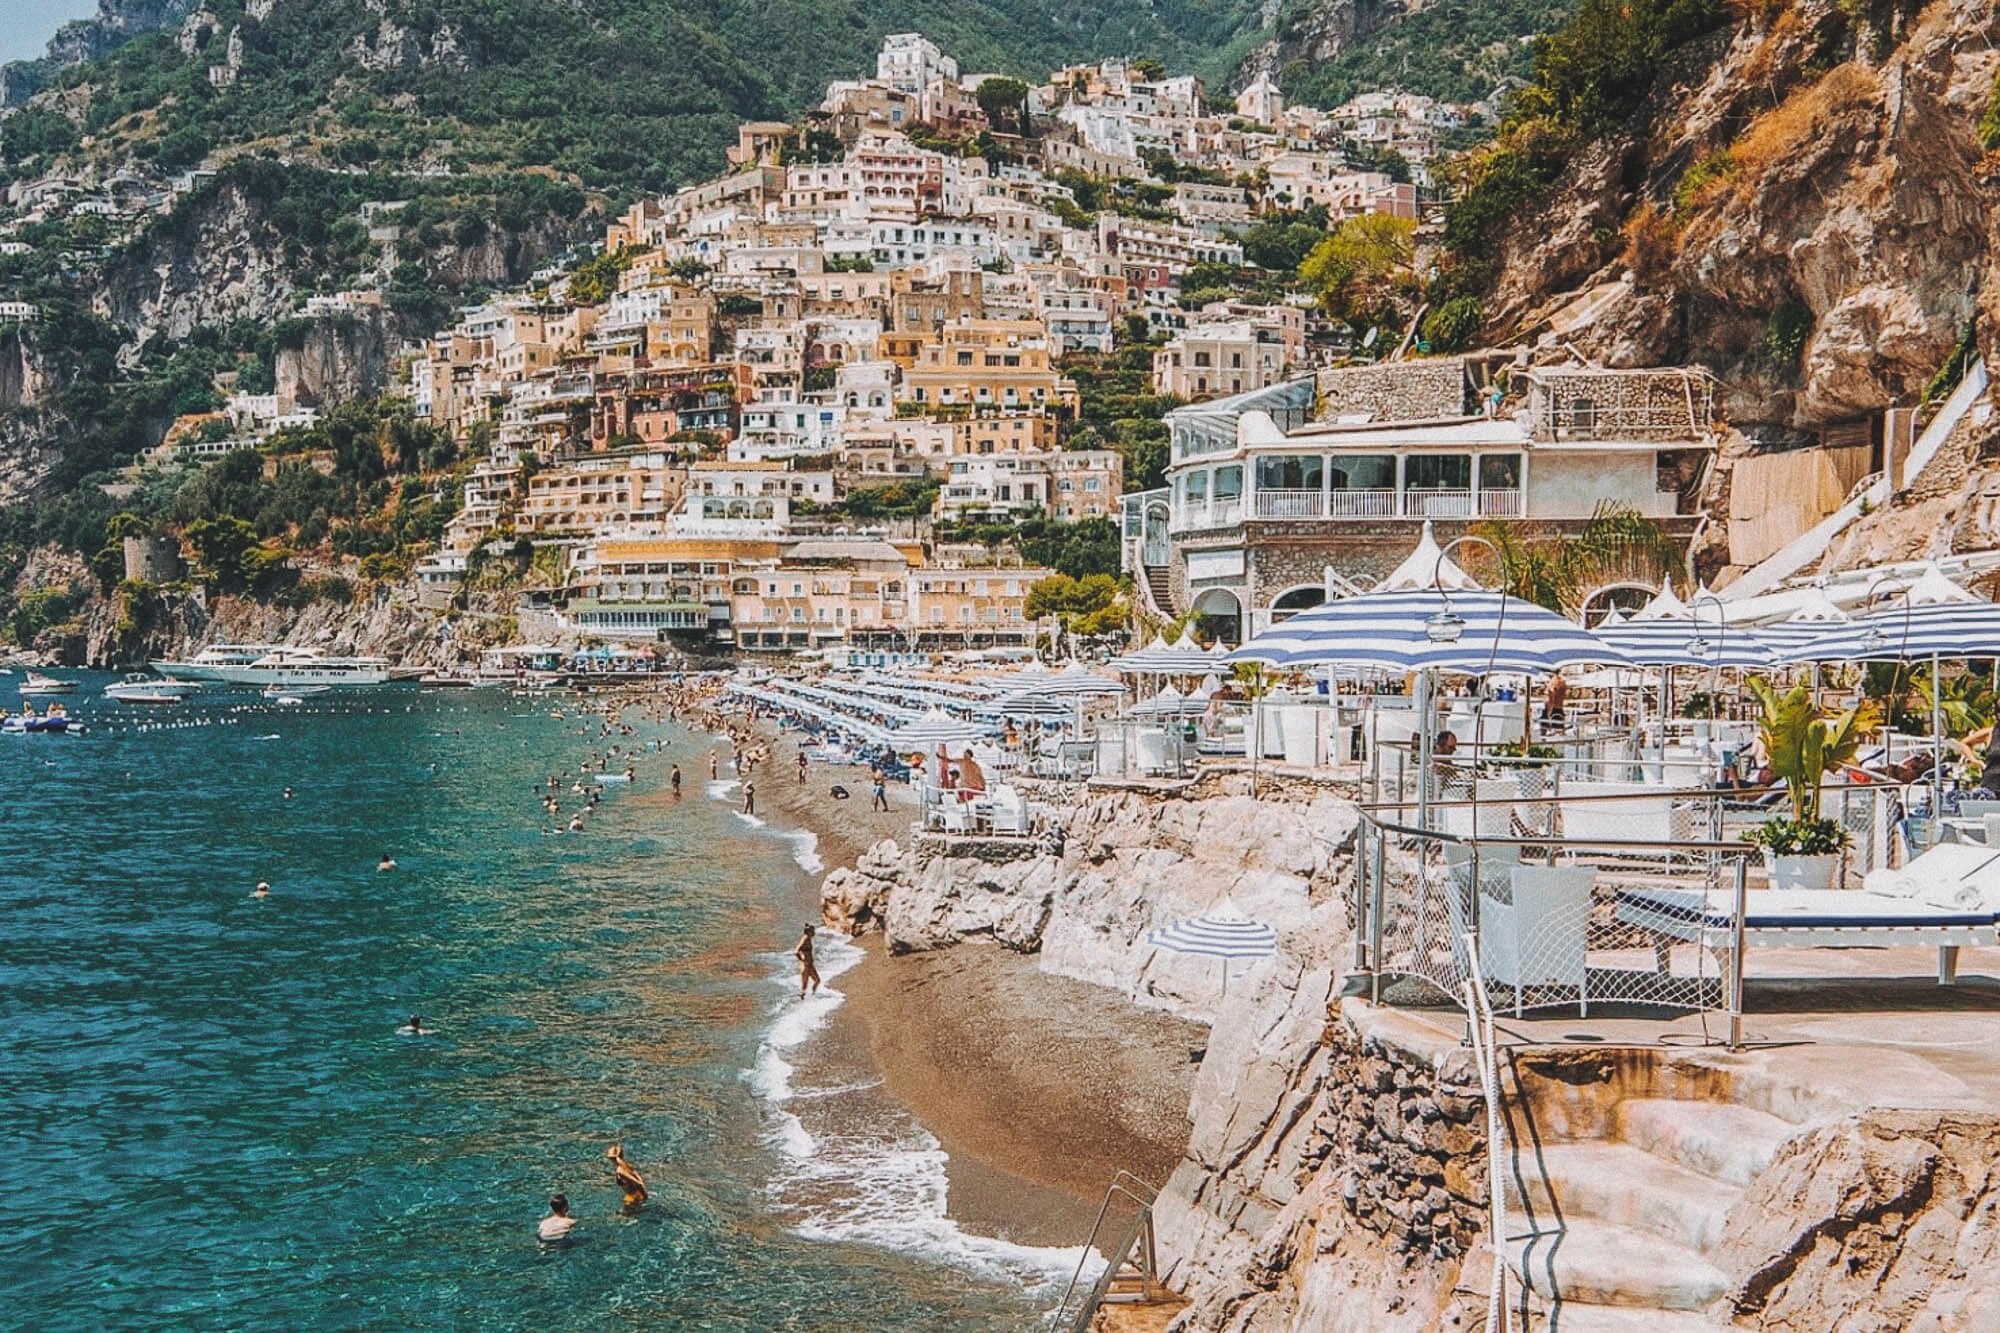 La-Scogliera-beach-club-Amalfi-coast-Italy-guide